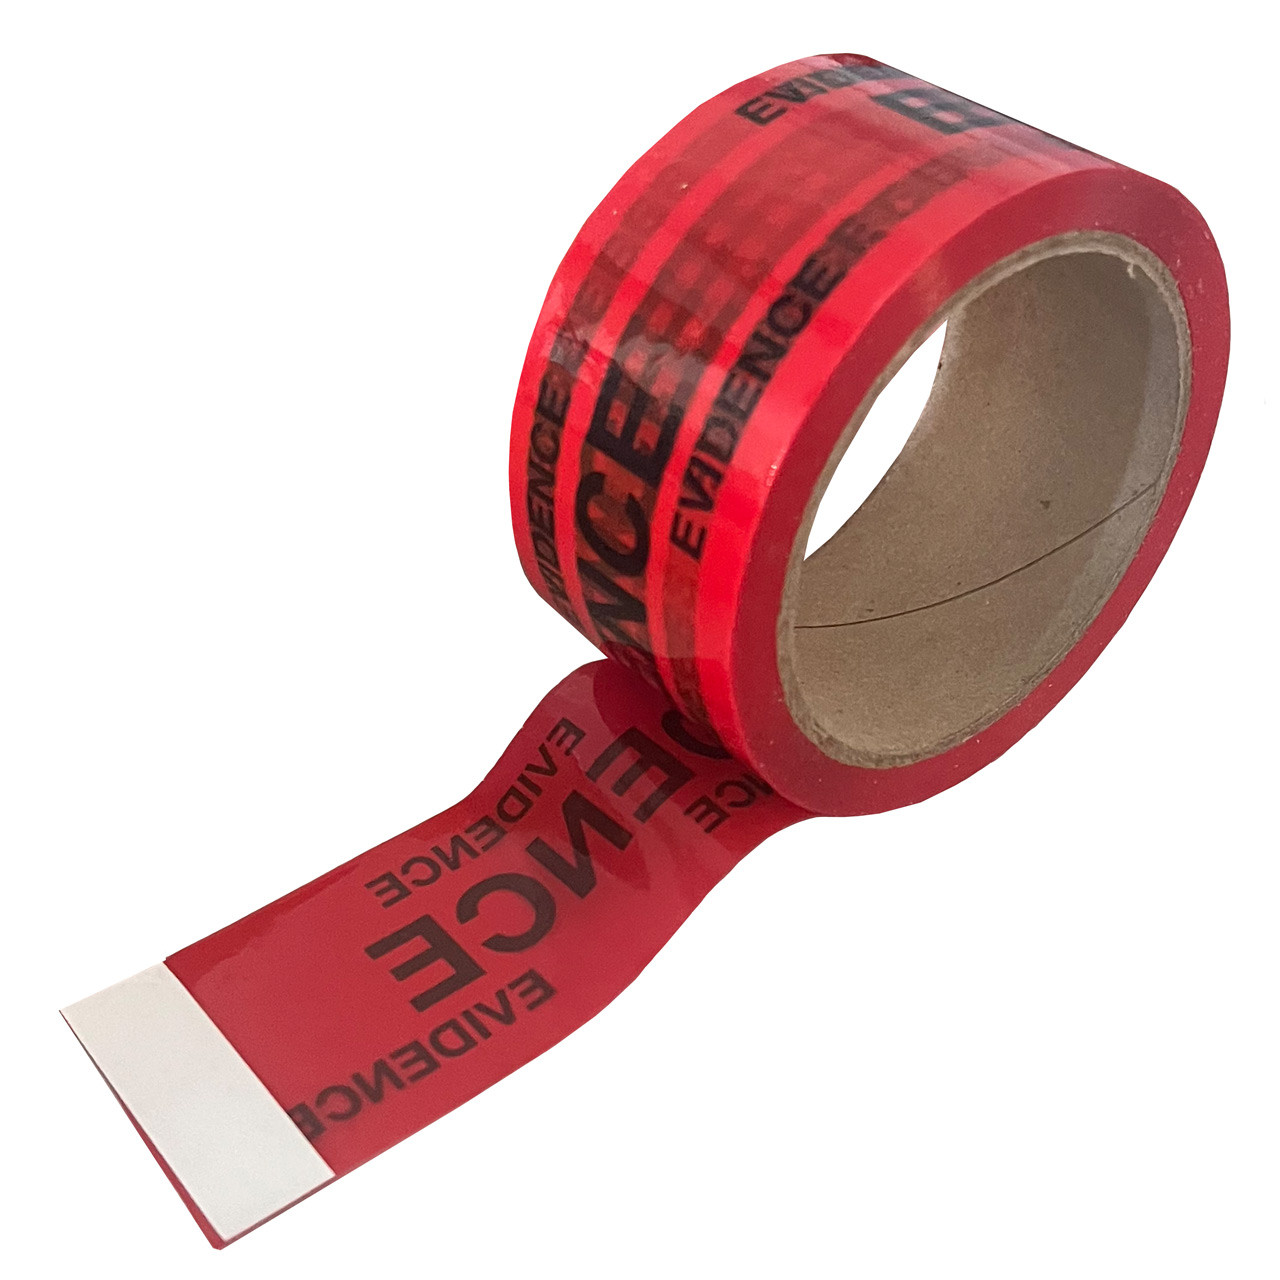 Tapecase 15C756 Carton Sealing Tape,Red/White,2In x 55yd